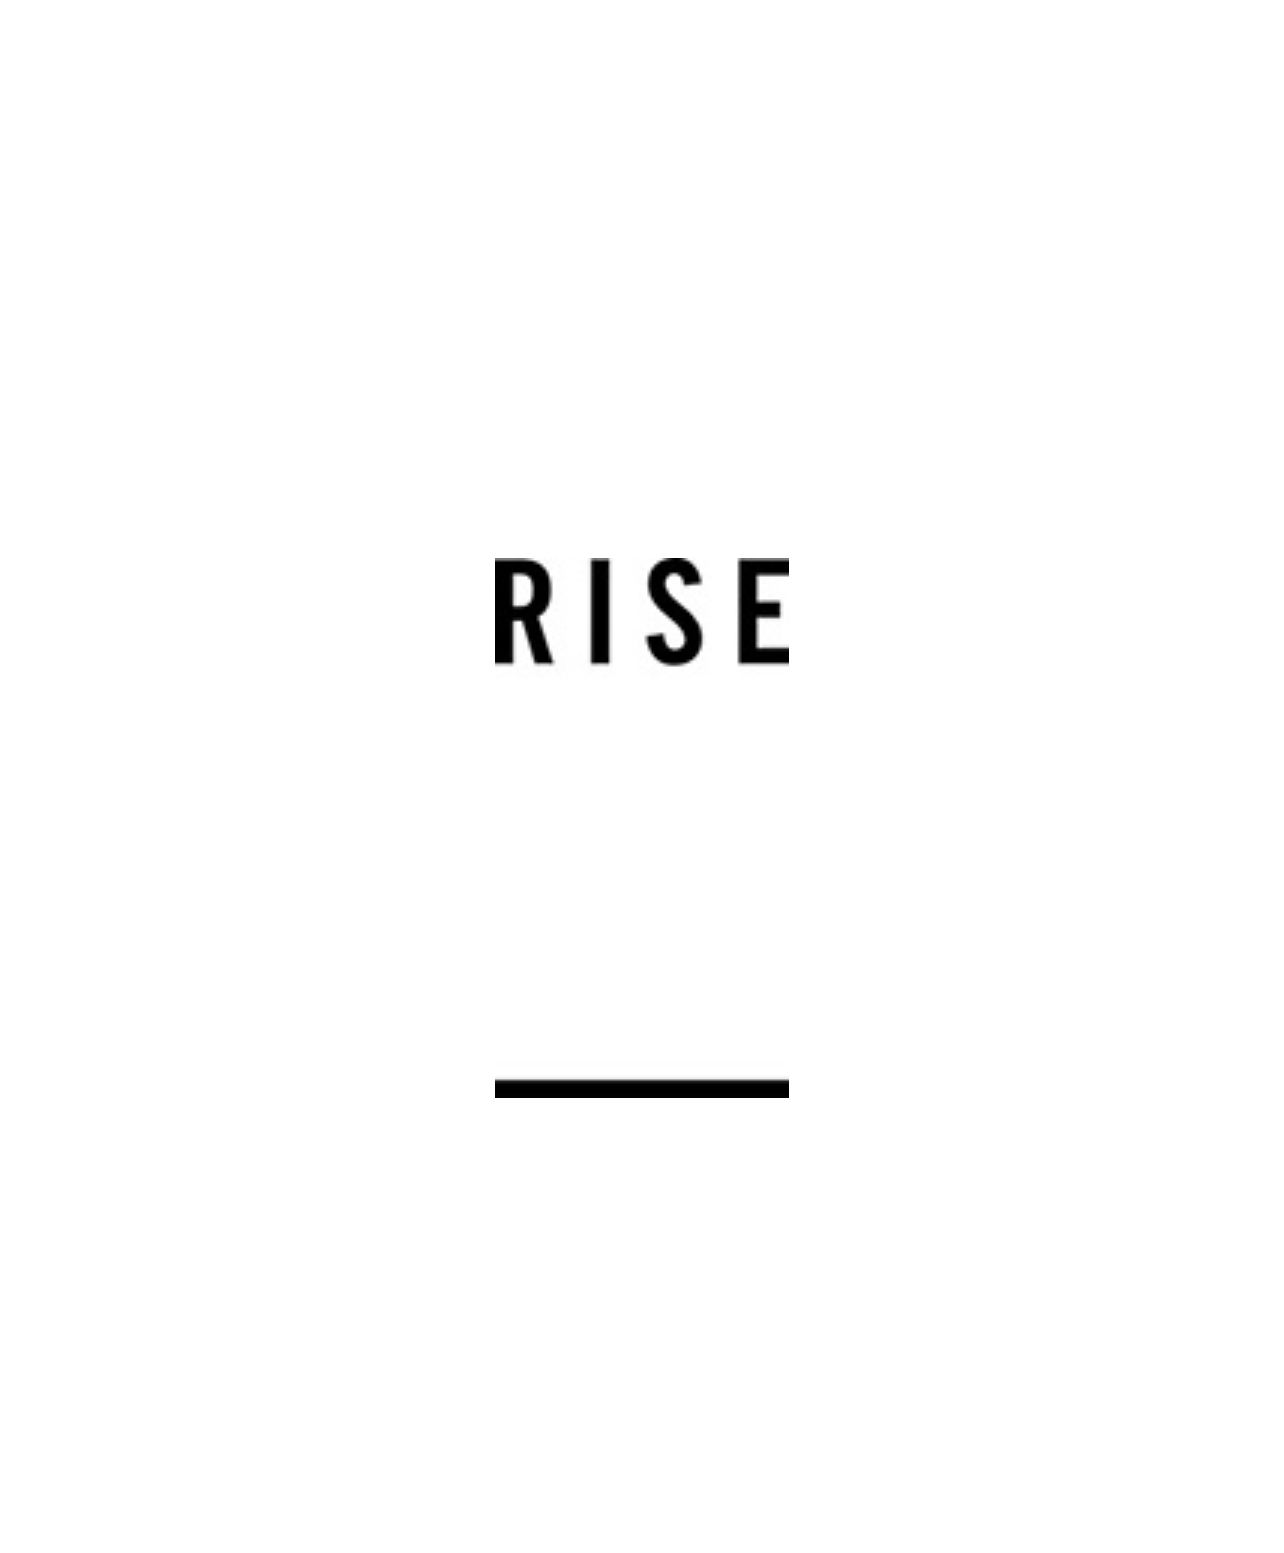 Rise Designs Studio